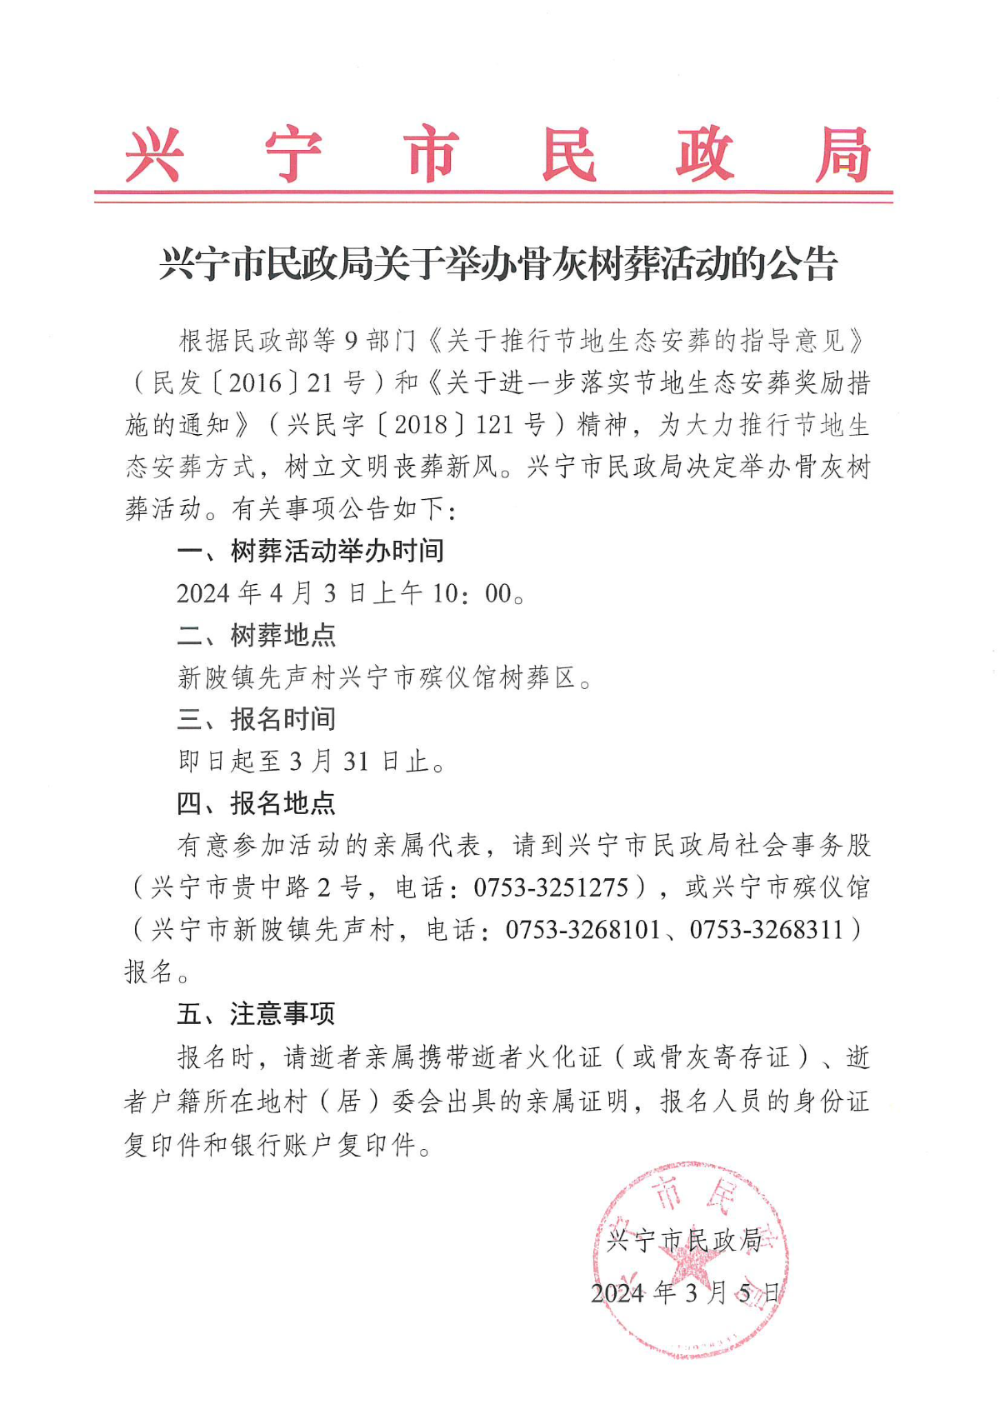 附件1  兴宁市民政局关于举办骨灰树葬活动的公告_00.jpg